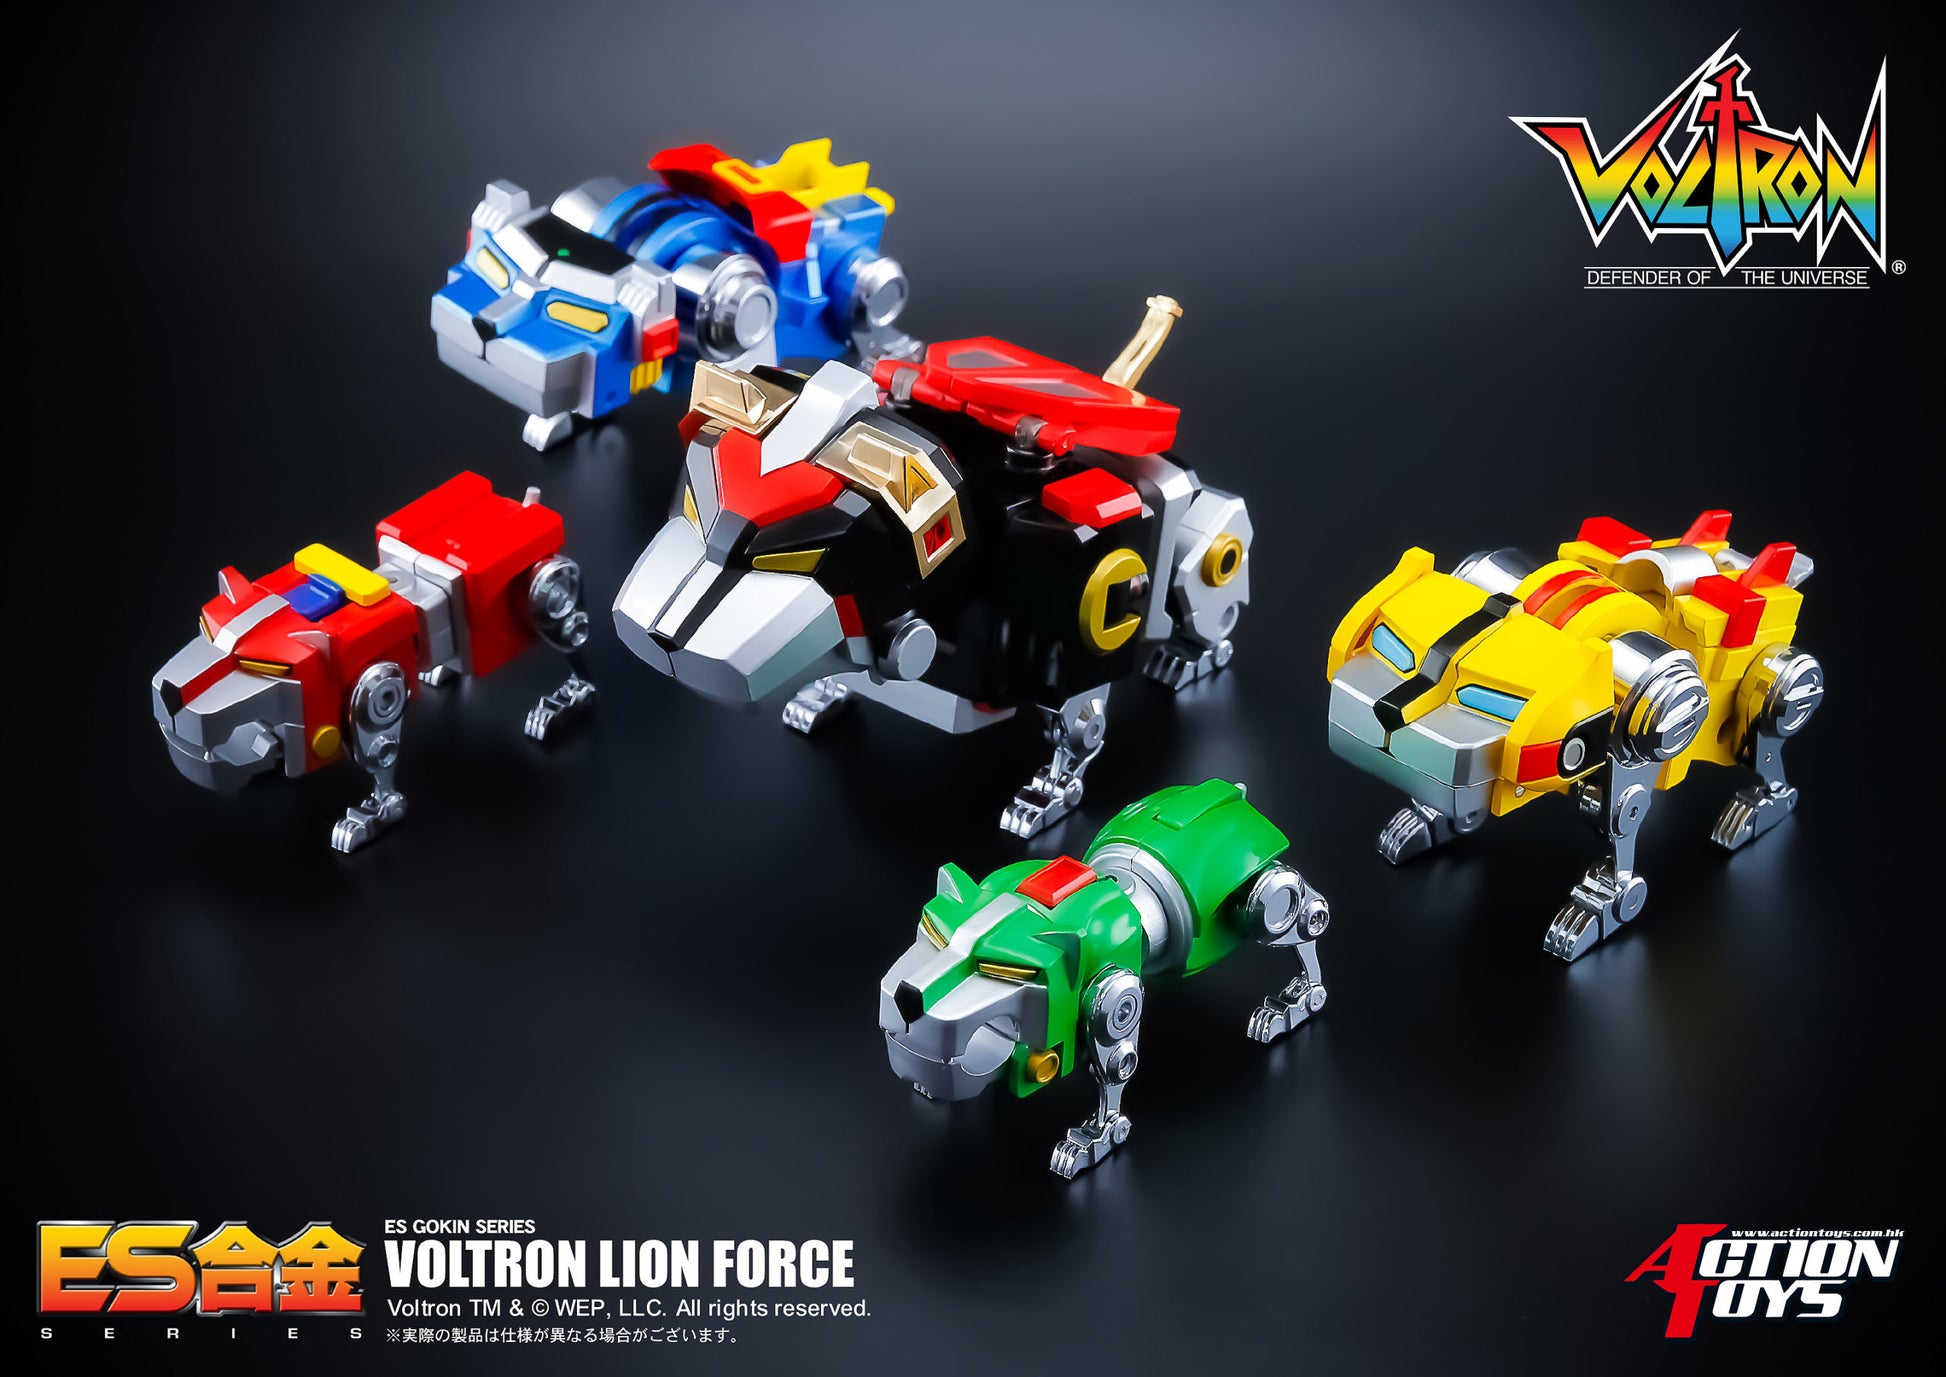 ES Alloy "Voltron: Defender of the Universe" Voltron Lion Force